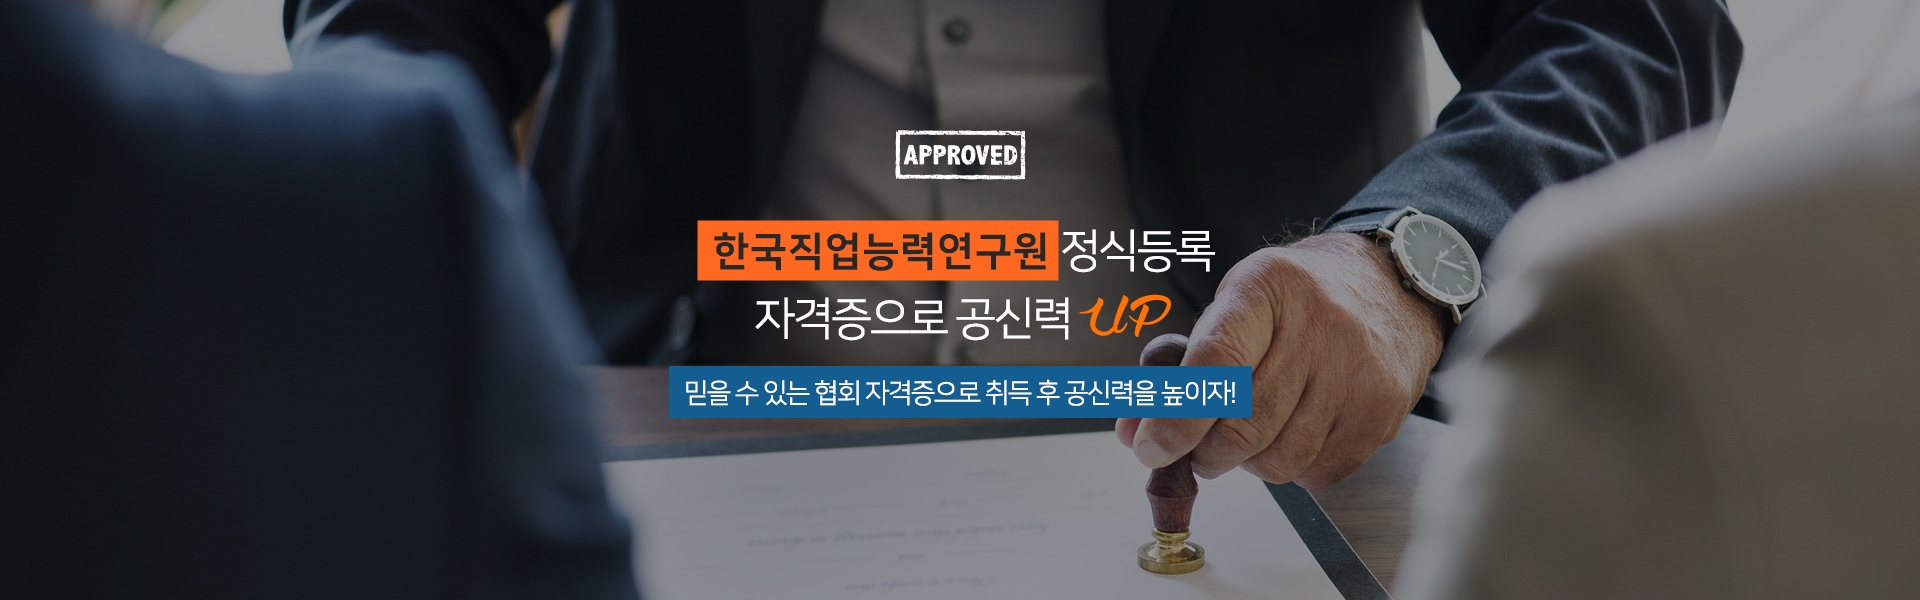 한국직업능력연구원 정식등록 자격증으로 공신력 UP 믿을 수 있는 협회 자격증으로 취득 후 공신력을 높이자!